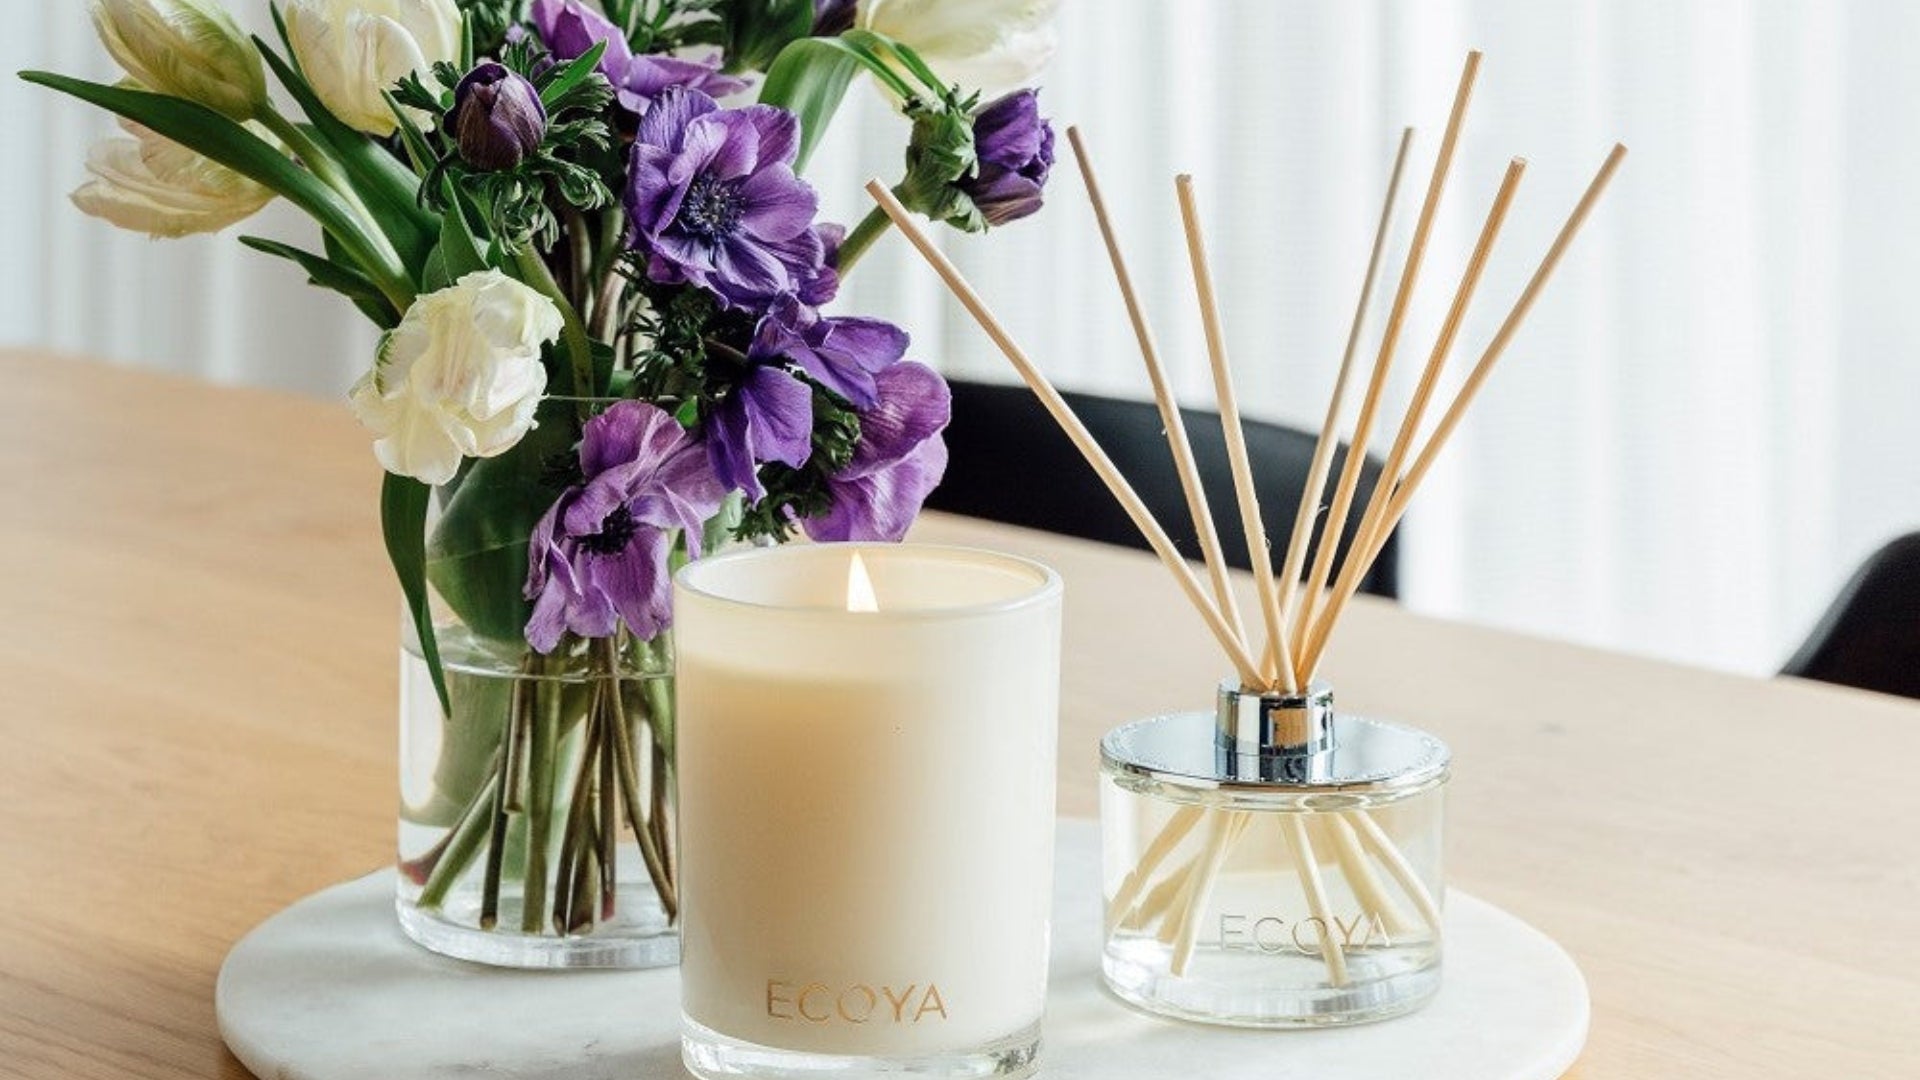 Ecoya's Spring Violet & Vetiver candle & diffuser